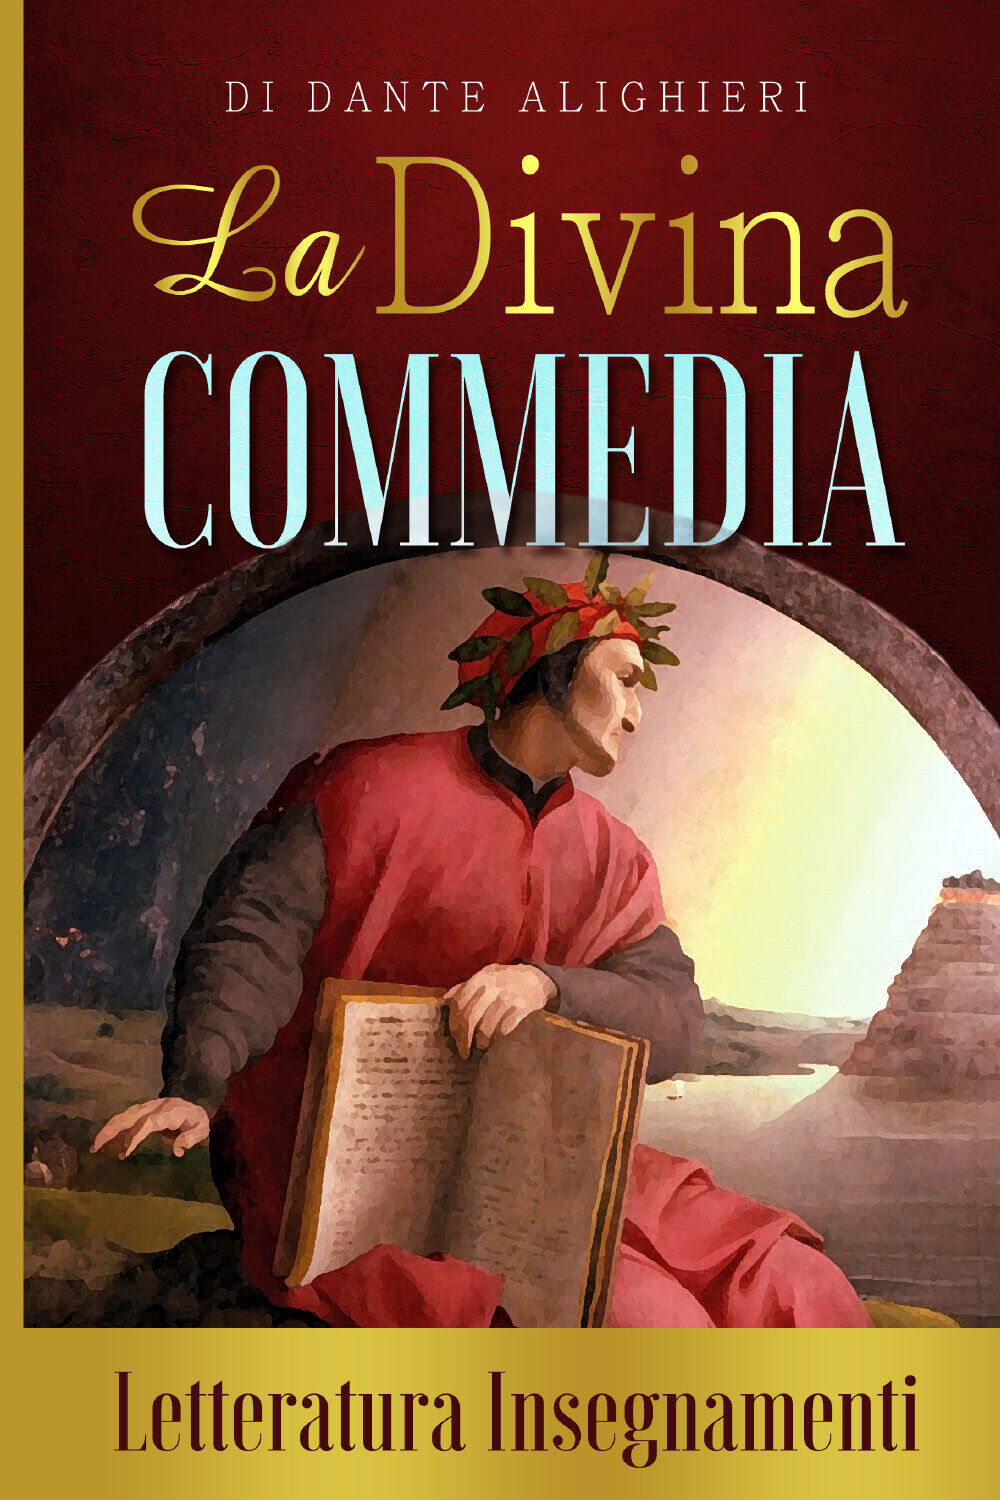 La Divina Commedia di Dante Alighieri. Letteratura insegnamenti di Letteratura I